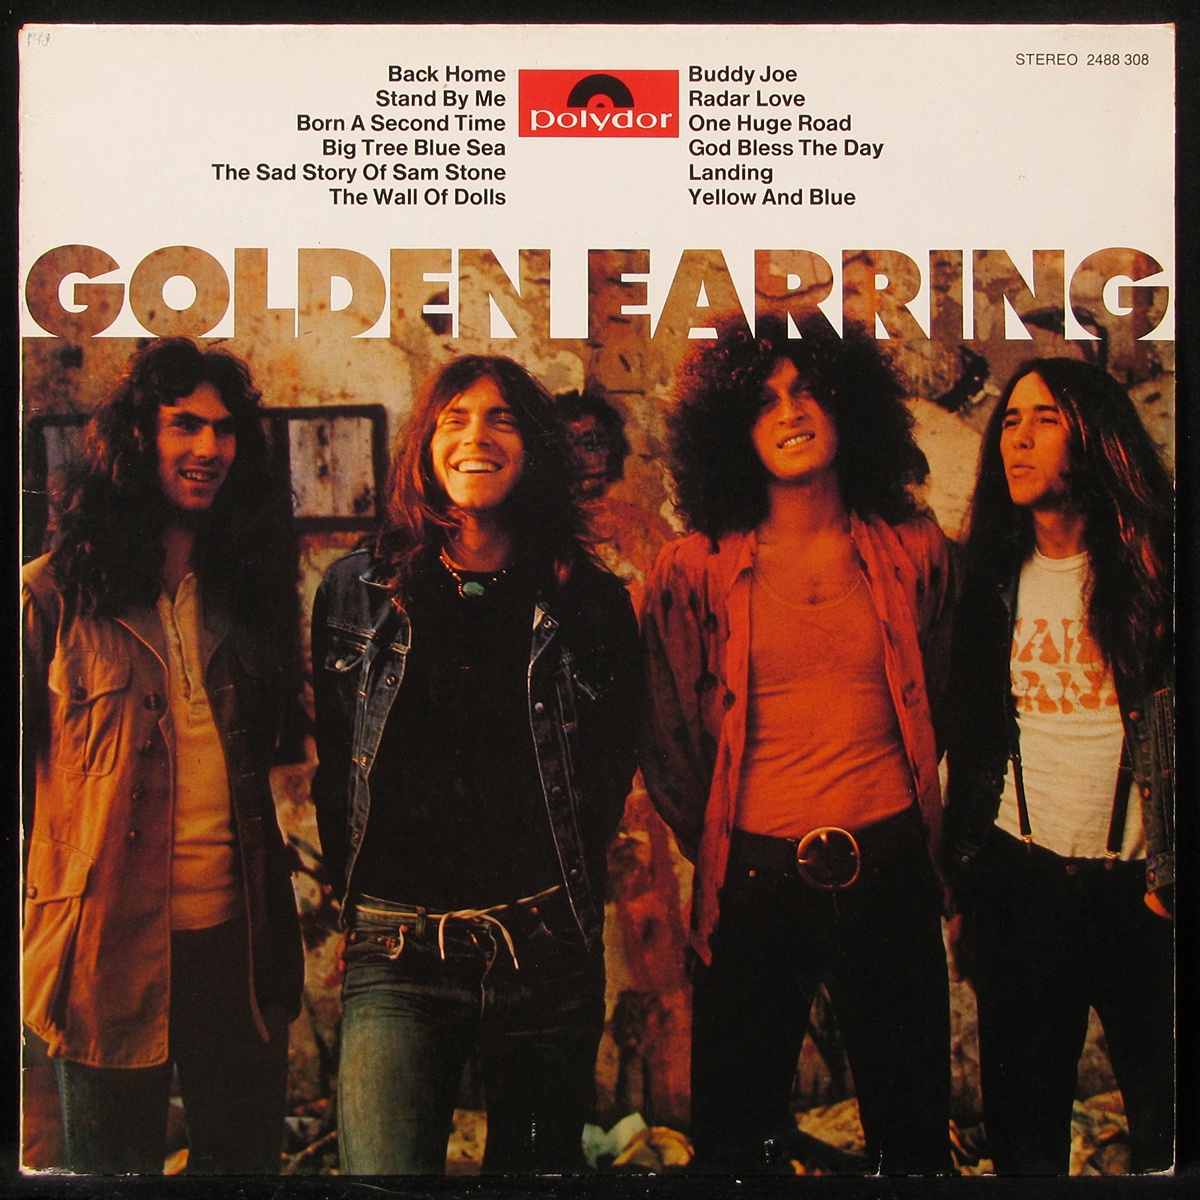 LP Golden Earring — Golden Earring (1976) фото